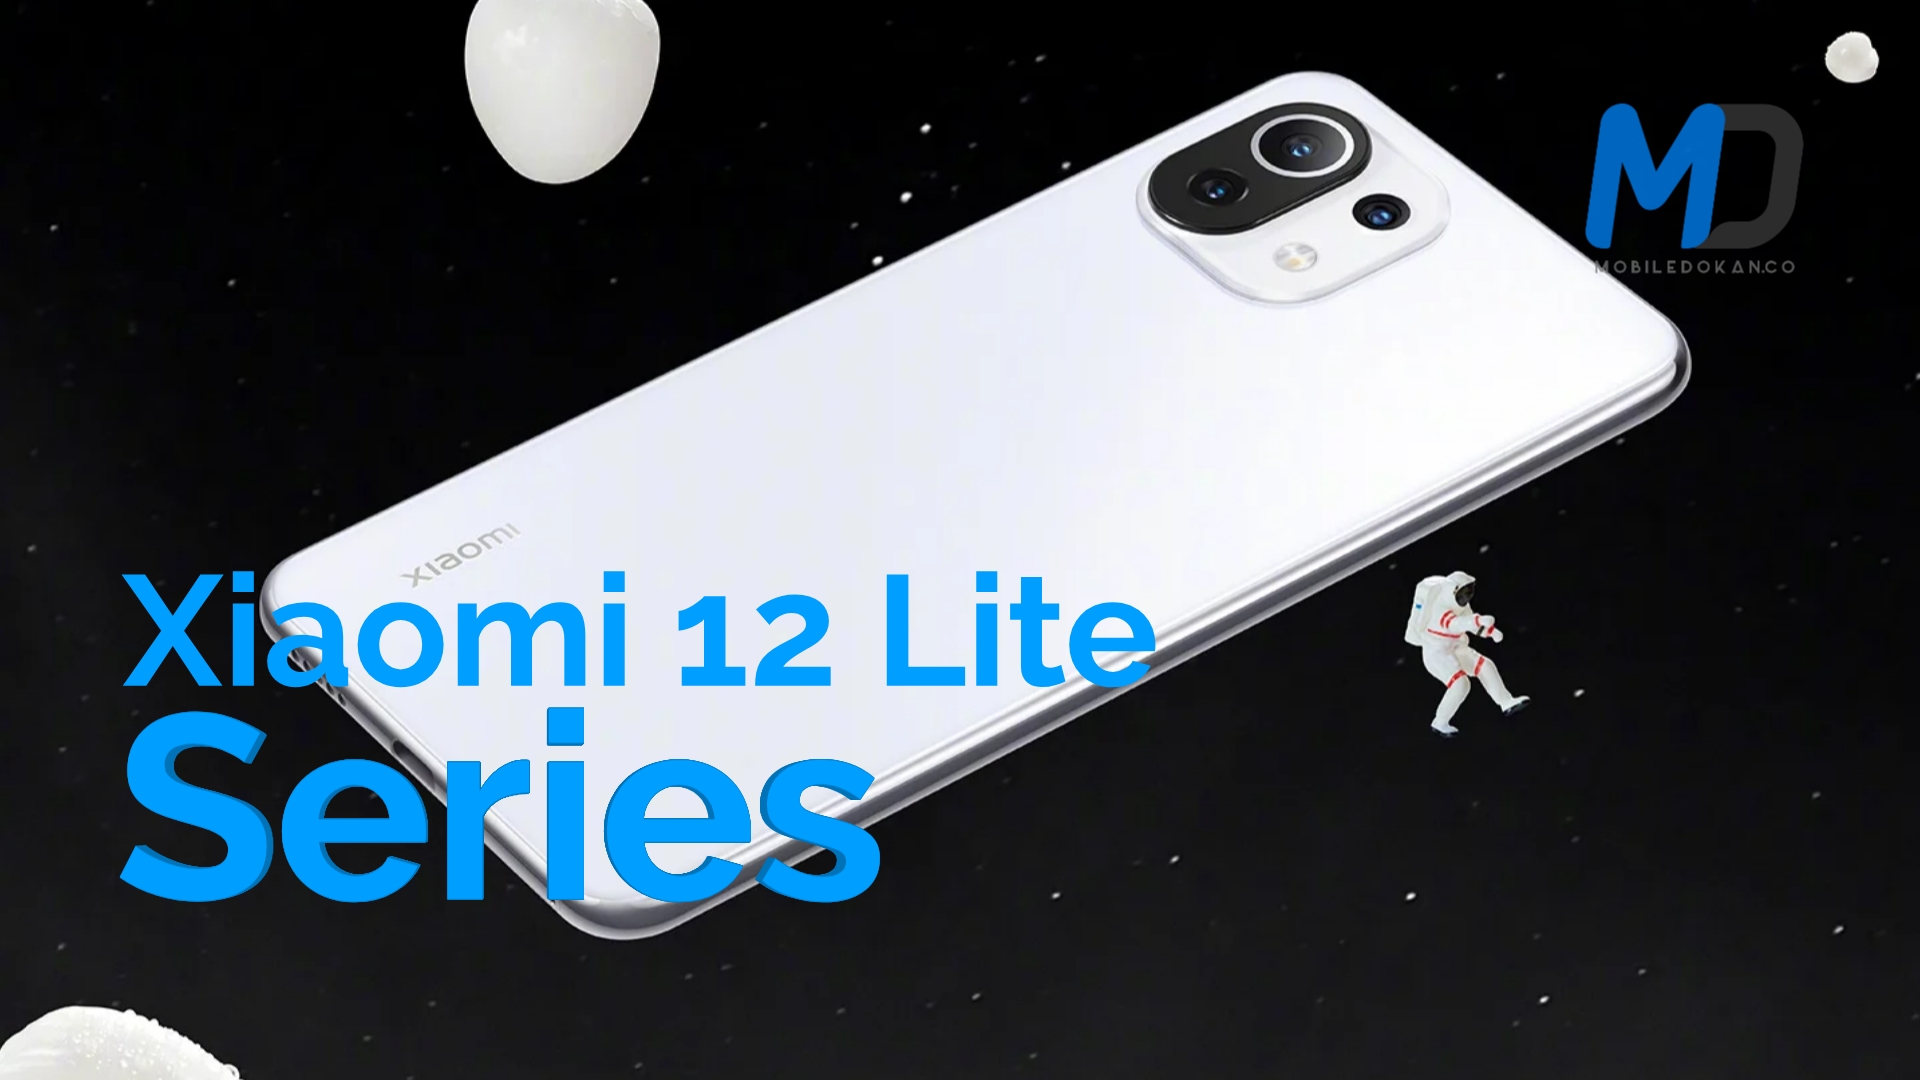 Alleged Xiaomi 12 Lite series specs emerge